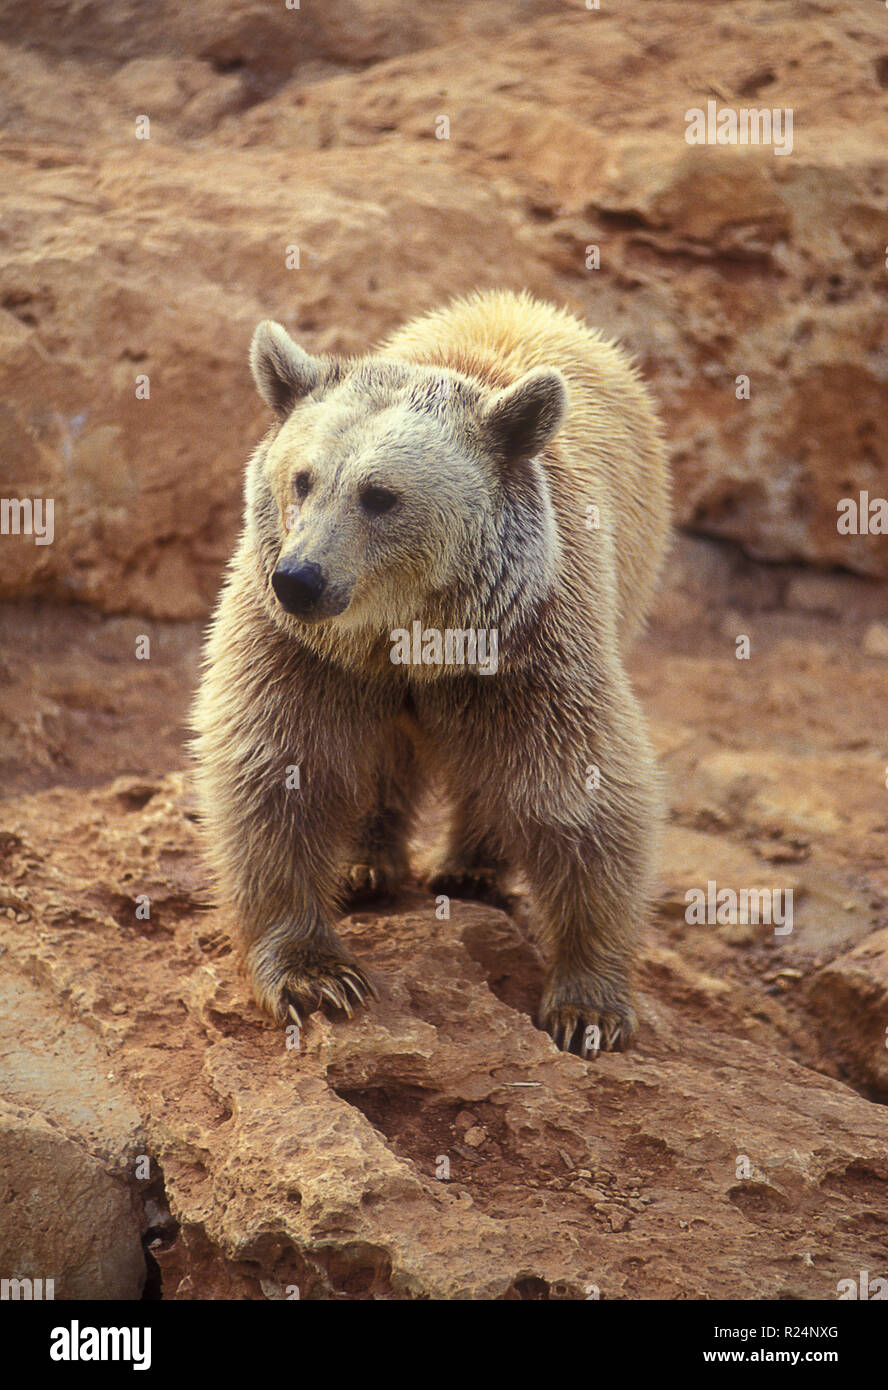 Syrian brown bear (Ursus arctos syriacus) Stock Photo